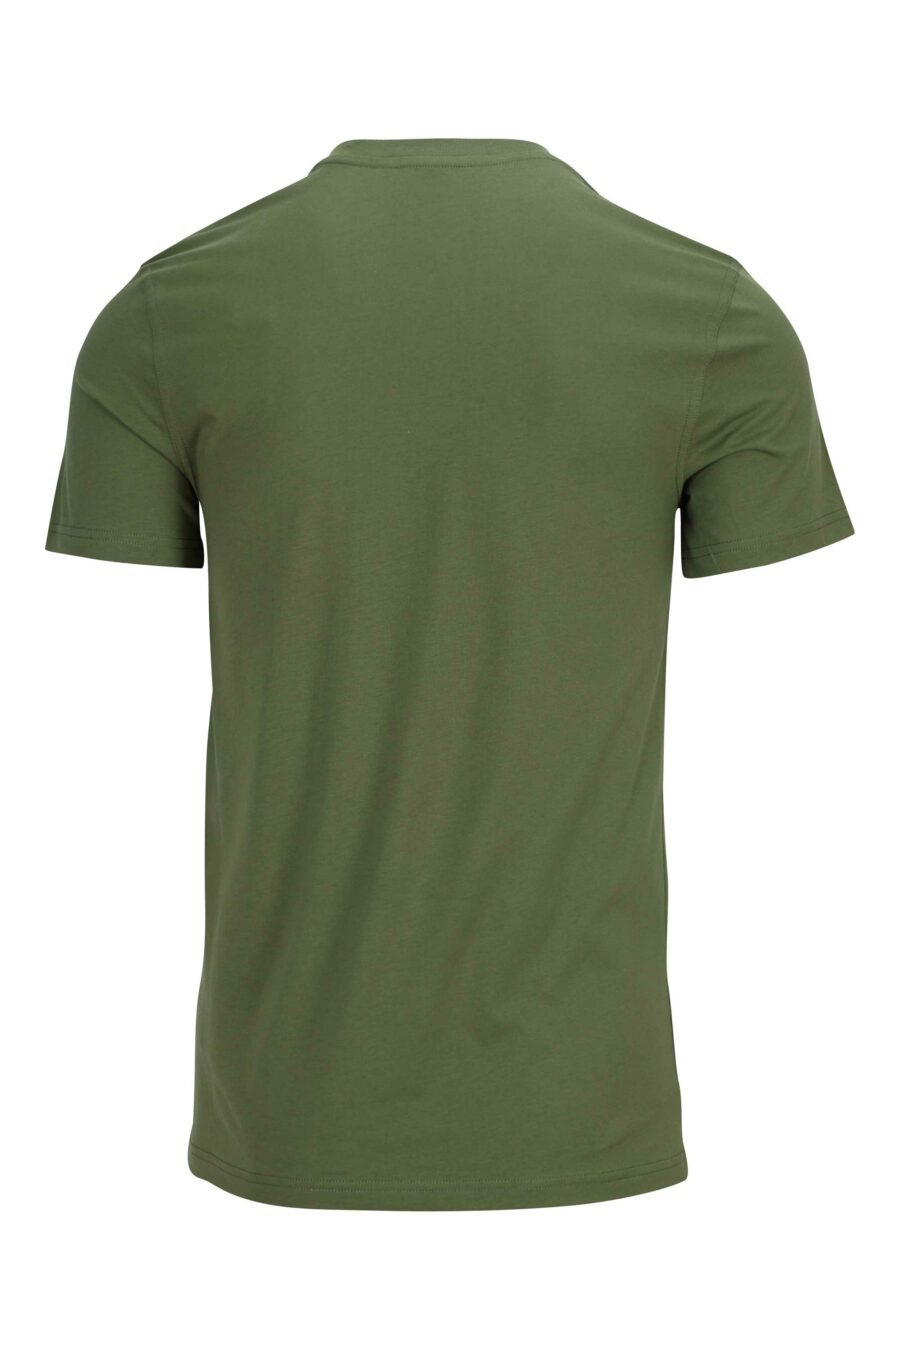 T-shirt verde militar em algodão orgânico com maxilogo "teddy" - 889316854527 1